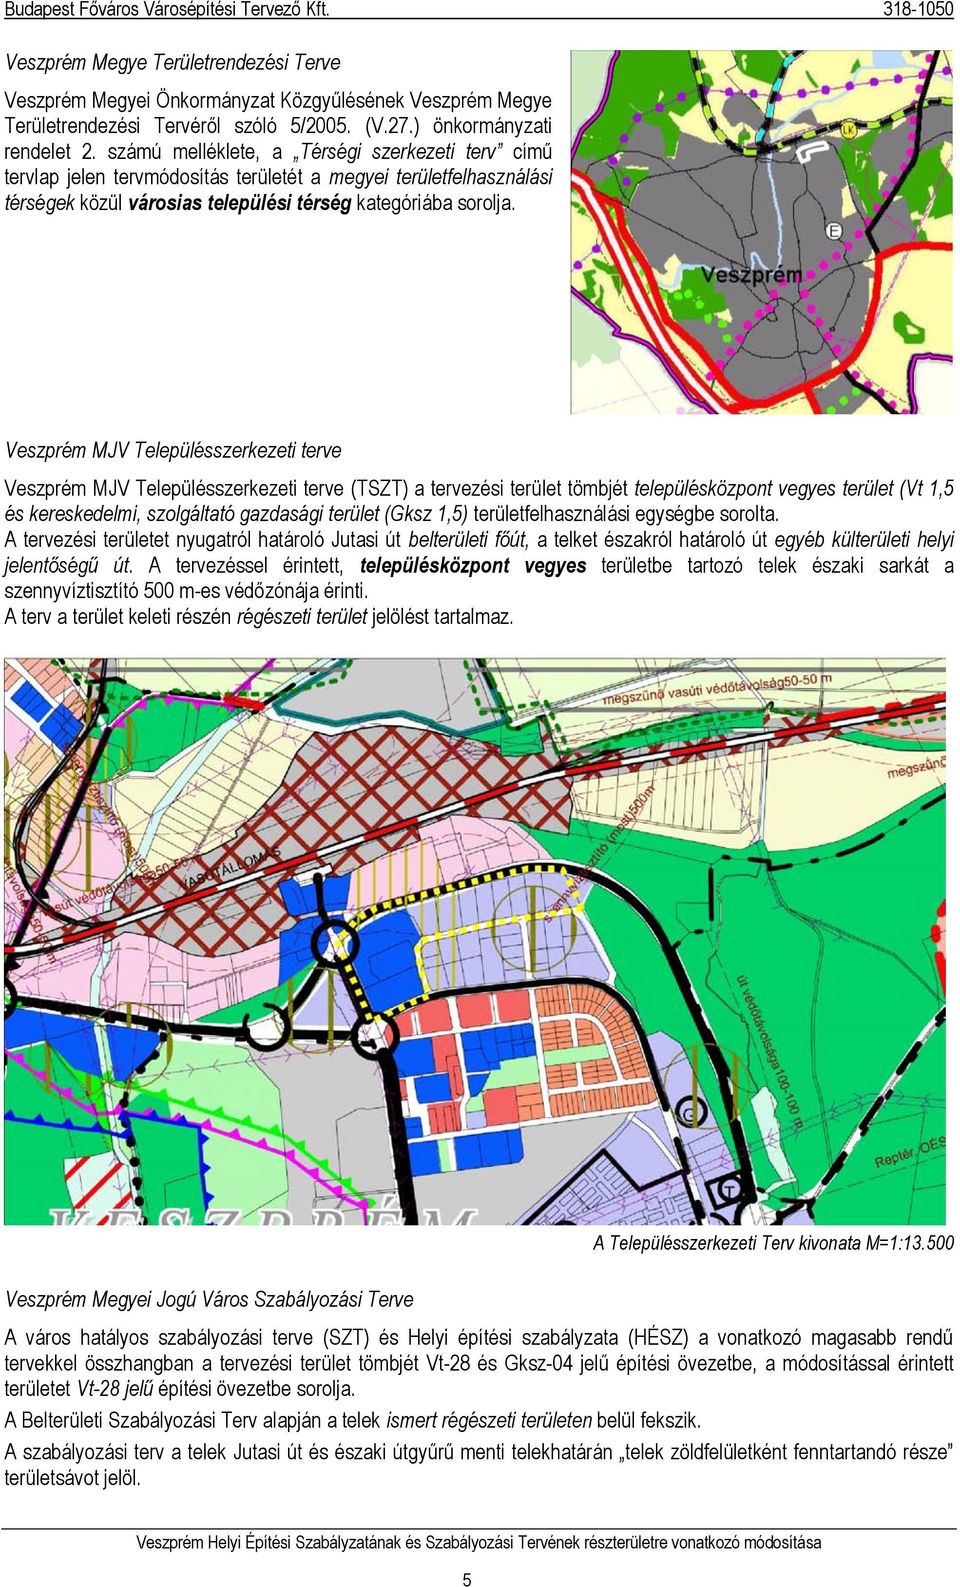 Veszprém MJV Településszerkezeti terve Veszprém MJV Településszerkezeti terve (TSZT) a tervezési terület tömbjét településközpont vegyes terület (Vt 1,5 és kereskedelmi, szolgáltató gazdasági terület